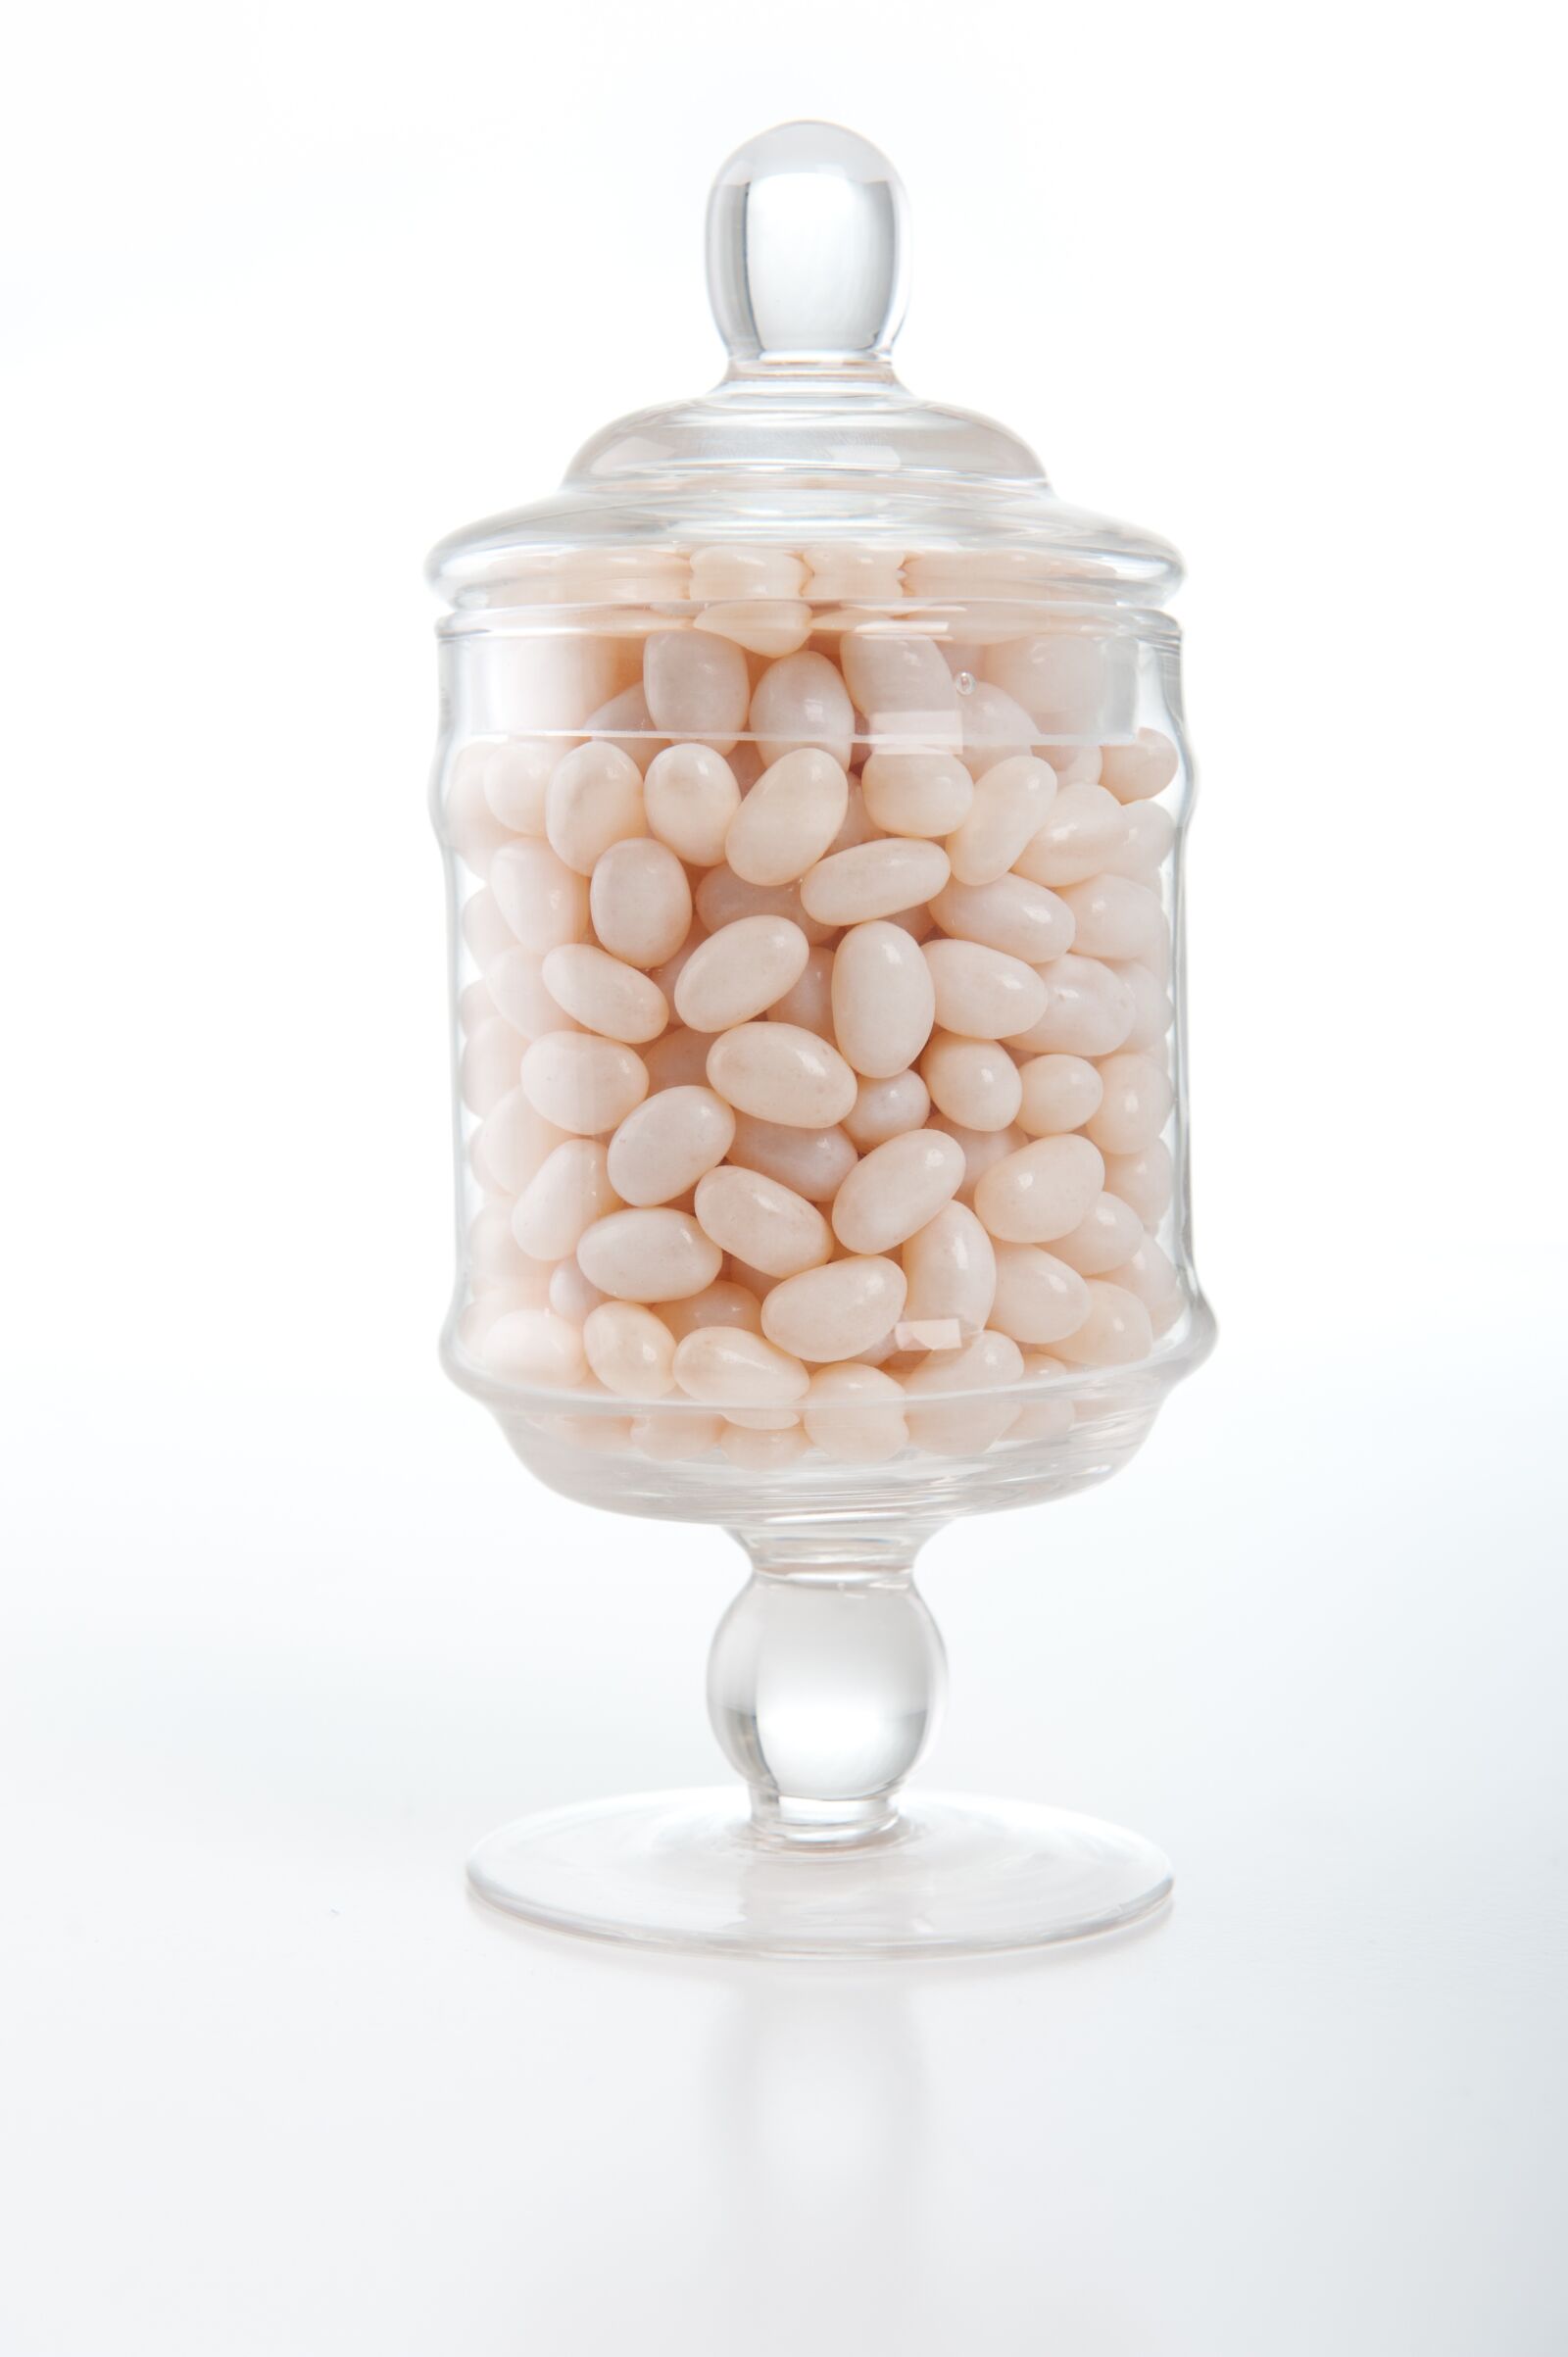 Nikon D700 sample photo. Jelly beans, lolly jar photography